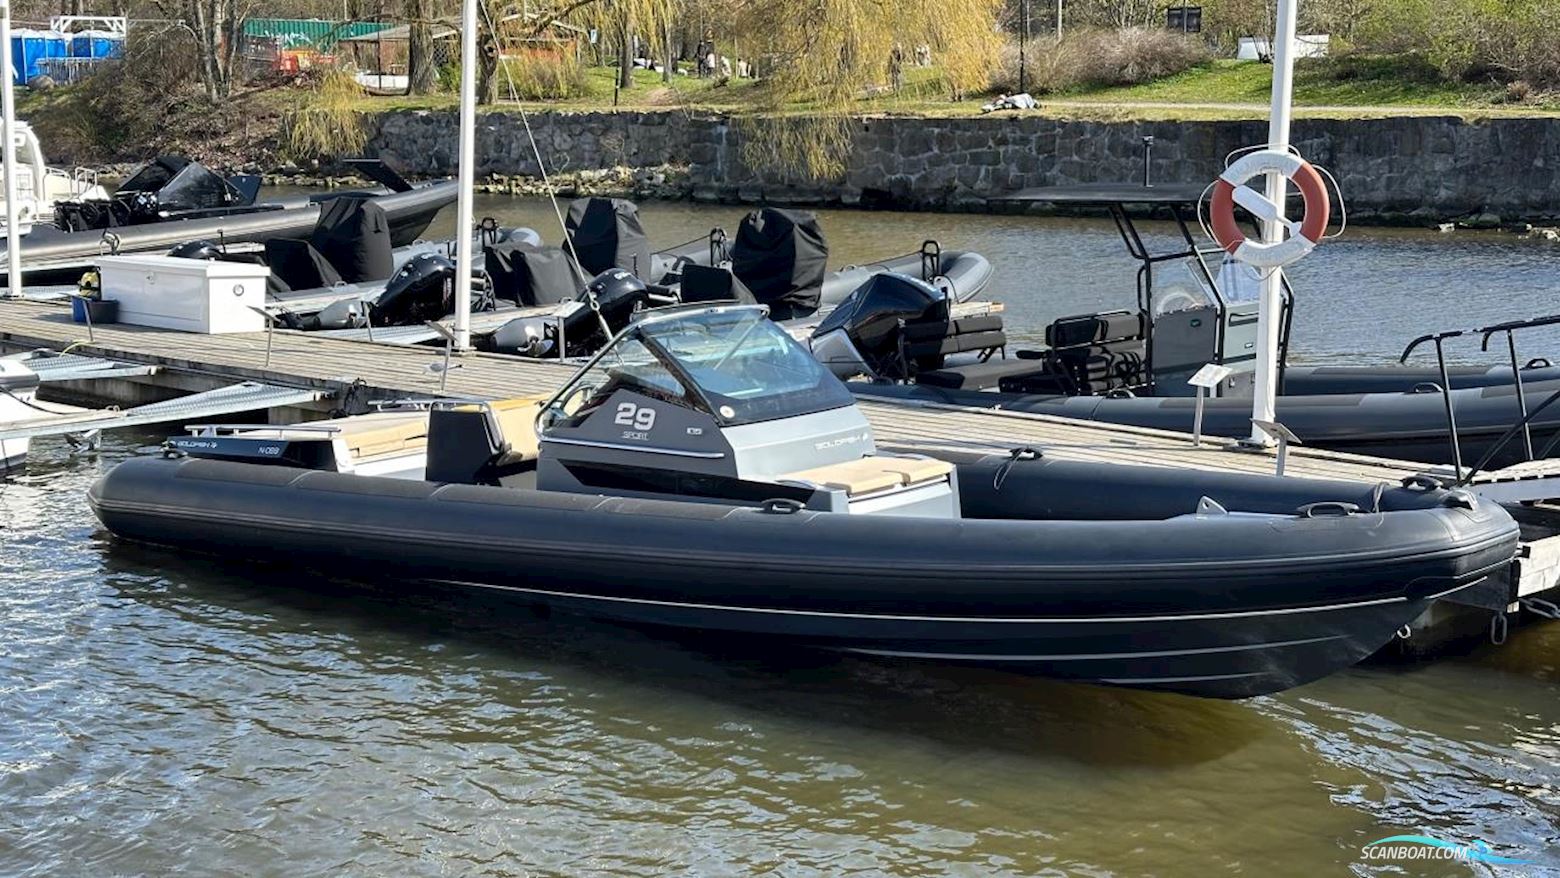 Goldfish 29 Sport Motorbåt 2020, med Mercruiser motor, Sverige